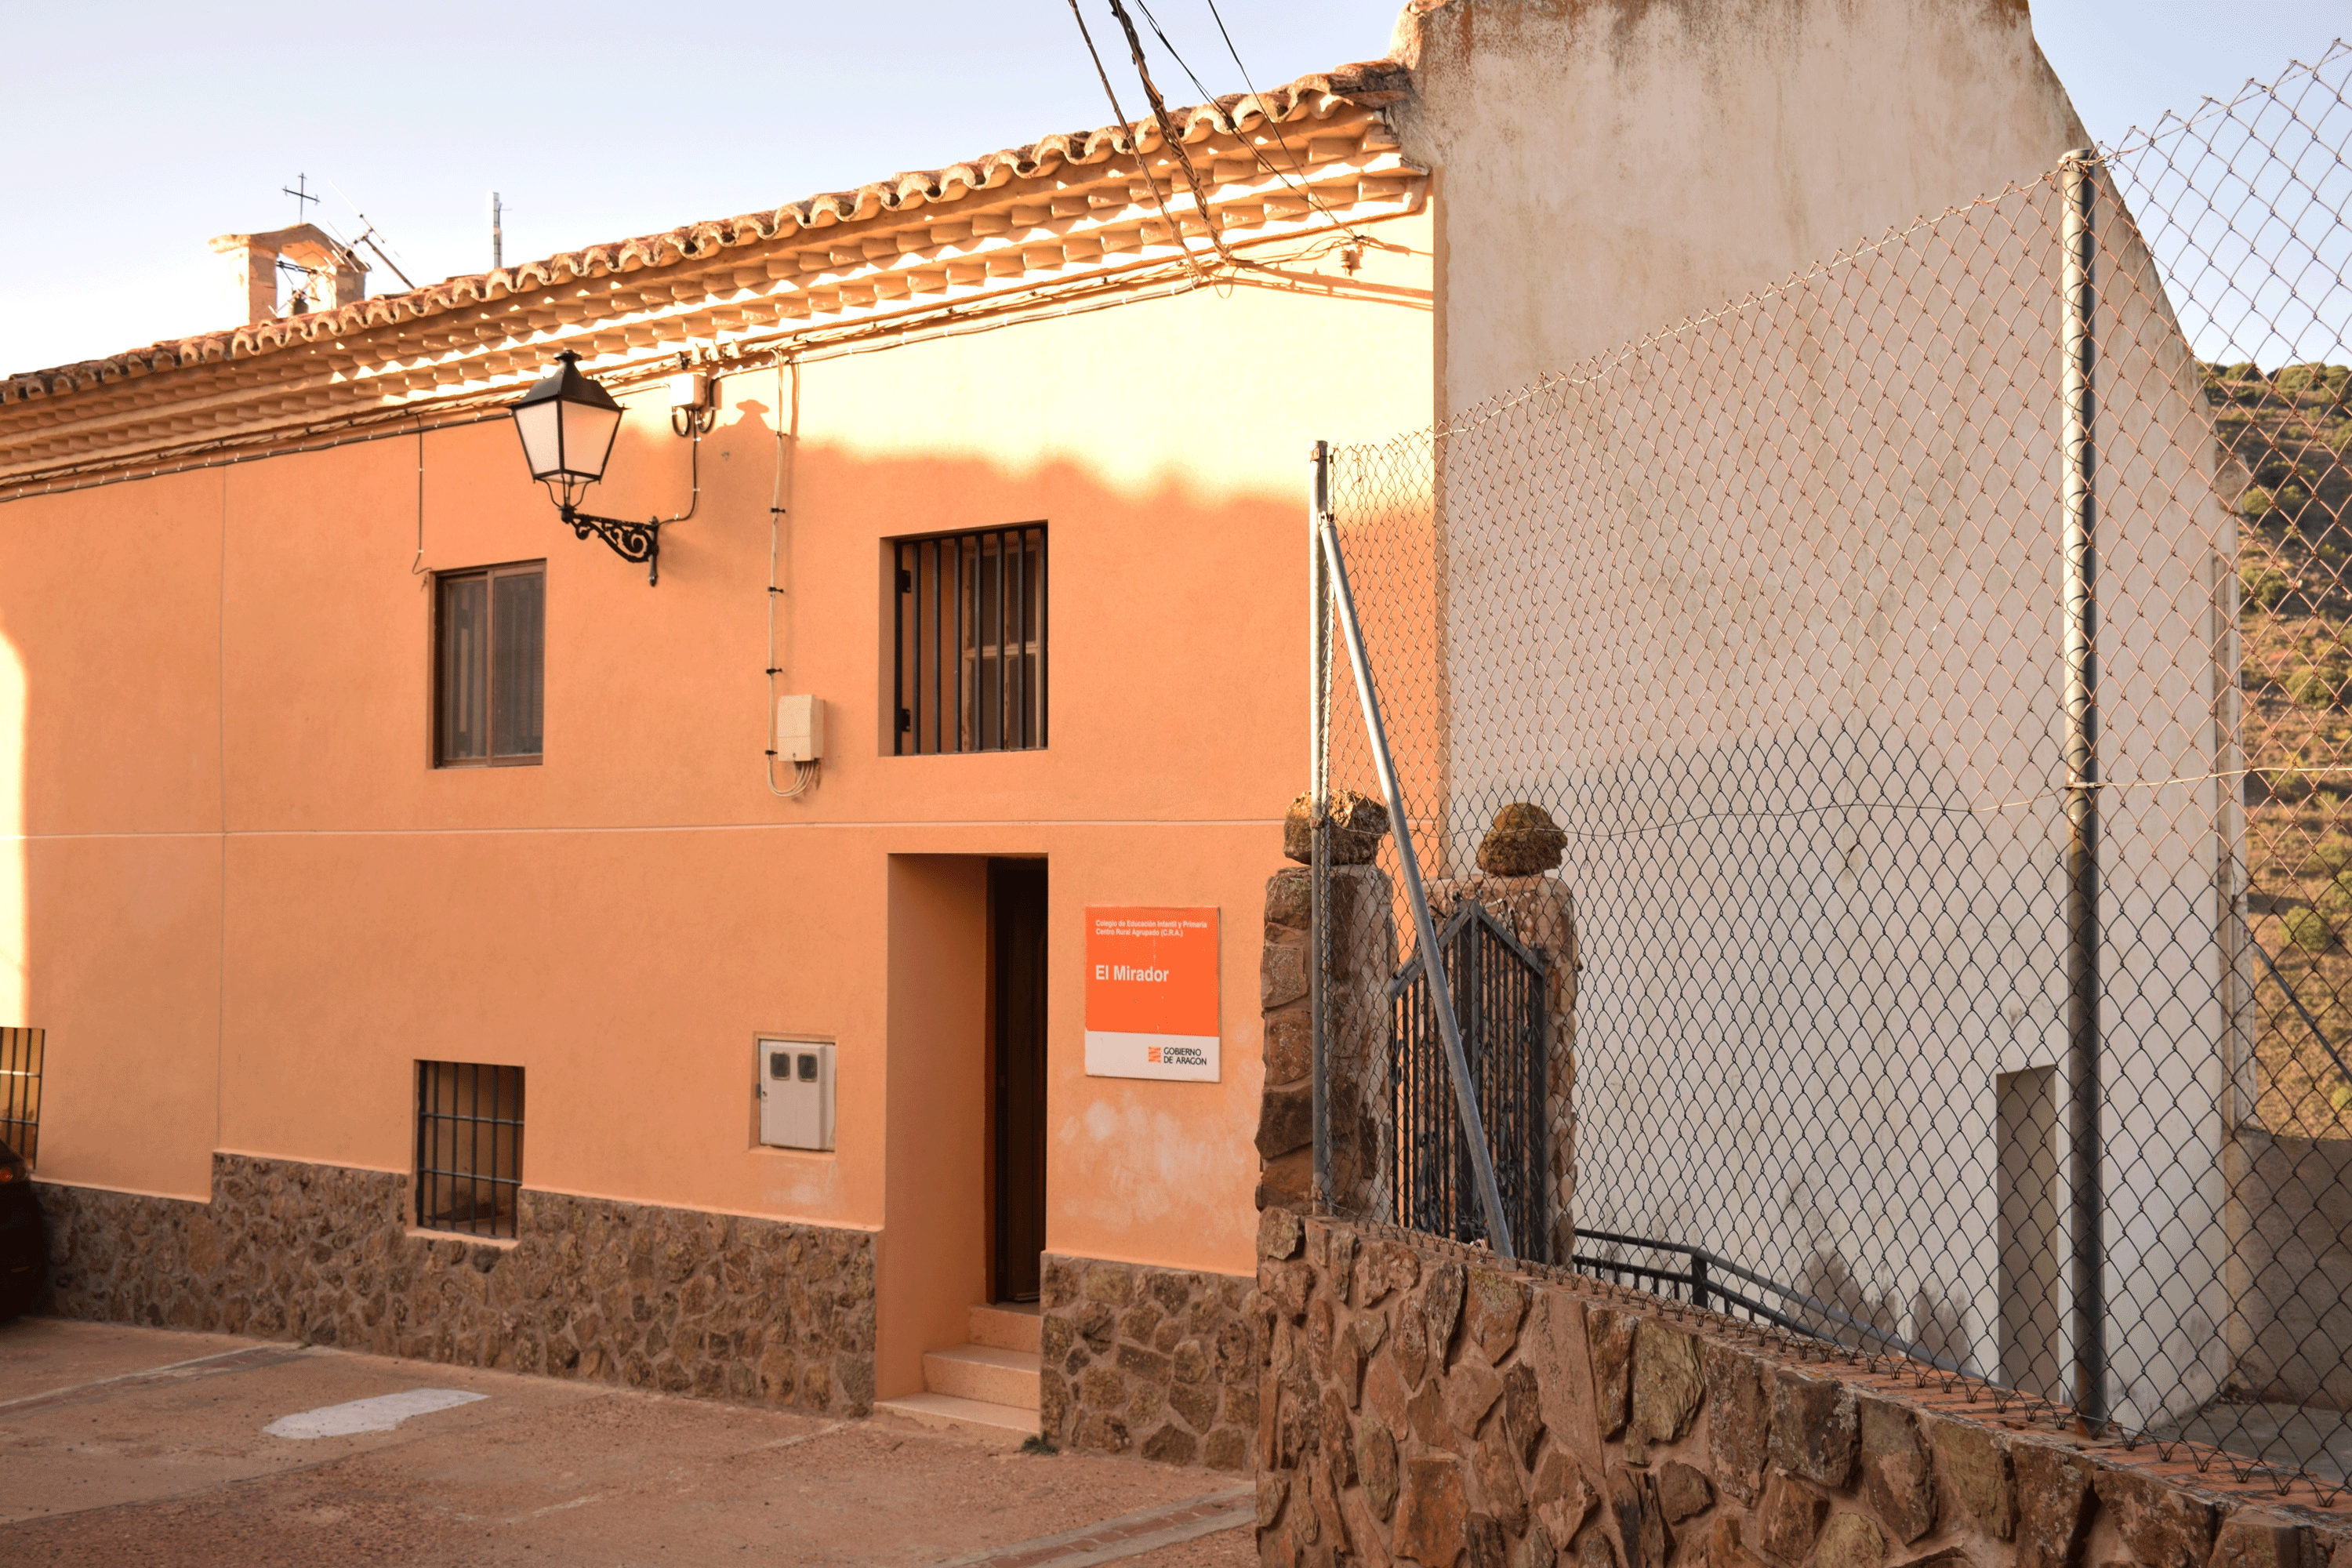 El colegio de Moros, situado en la comarca de Calatayud, provincia de Zaragoza, peligra por cierre ante la escasez de alumnos.